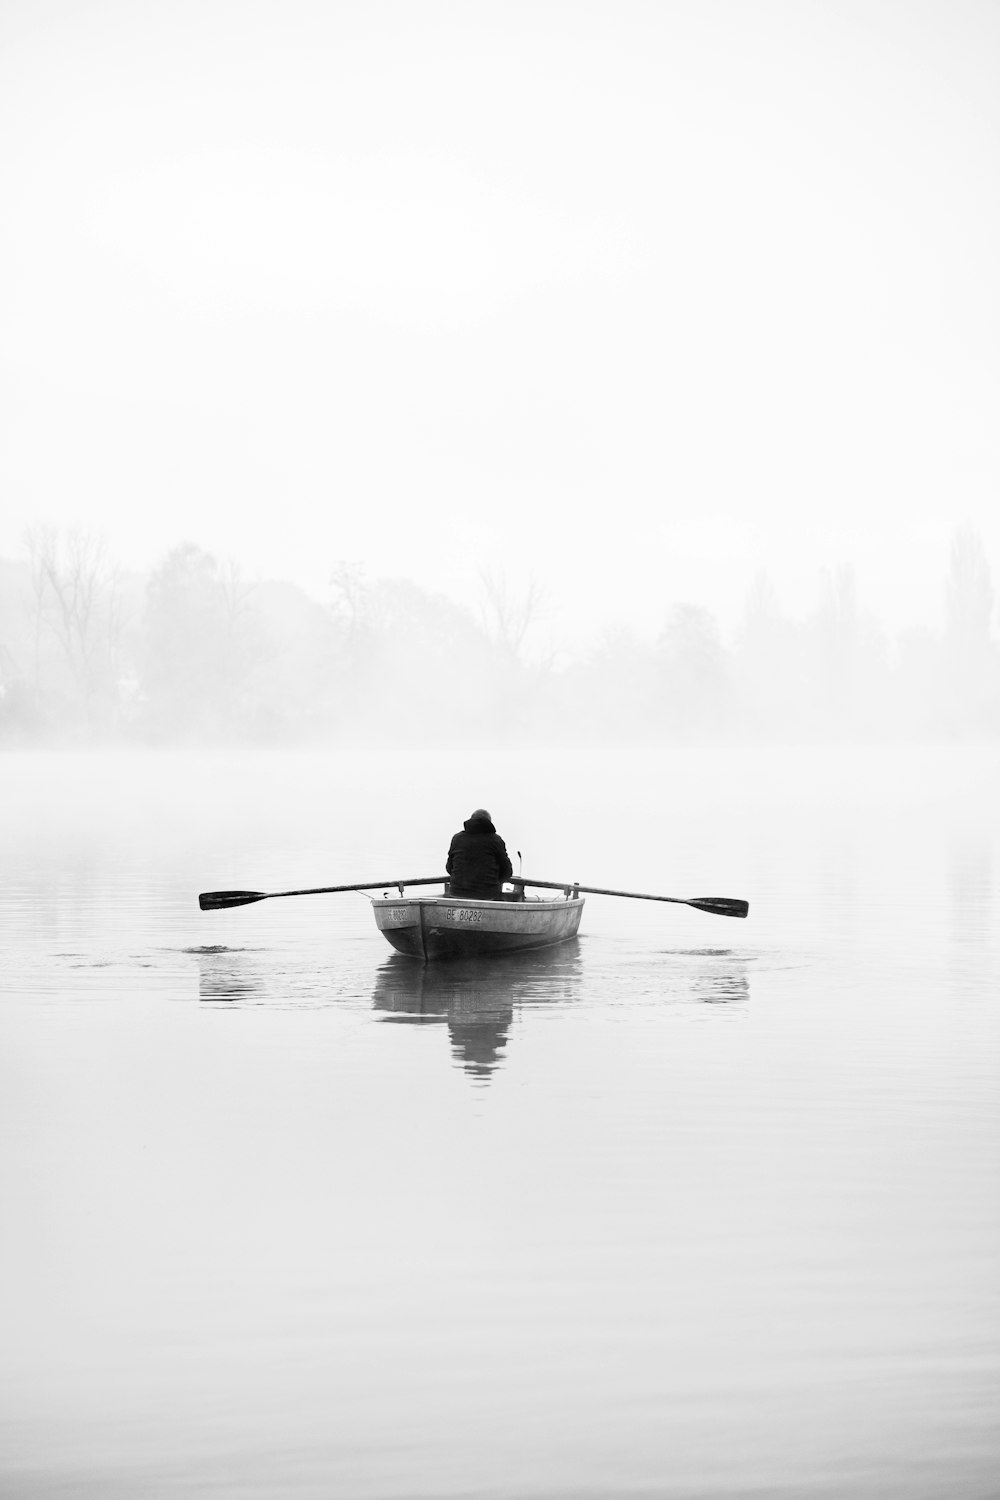 Una persona in una barca a remi su un lago nebbioso